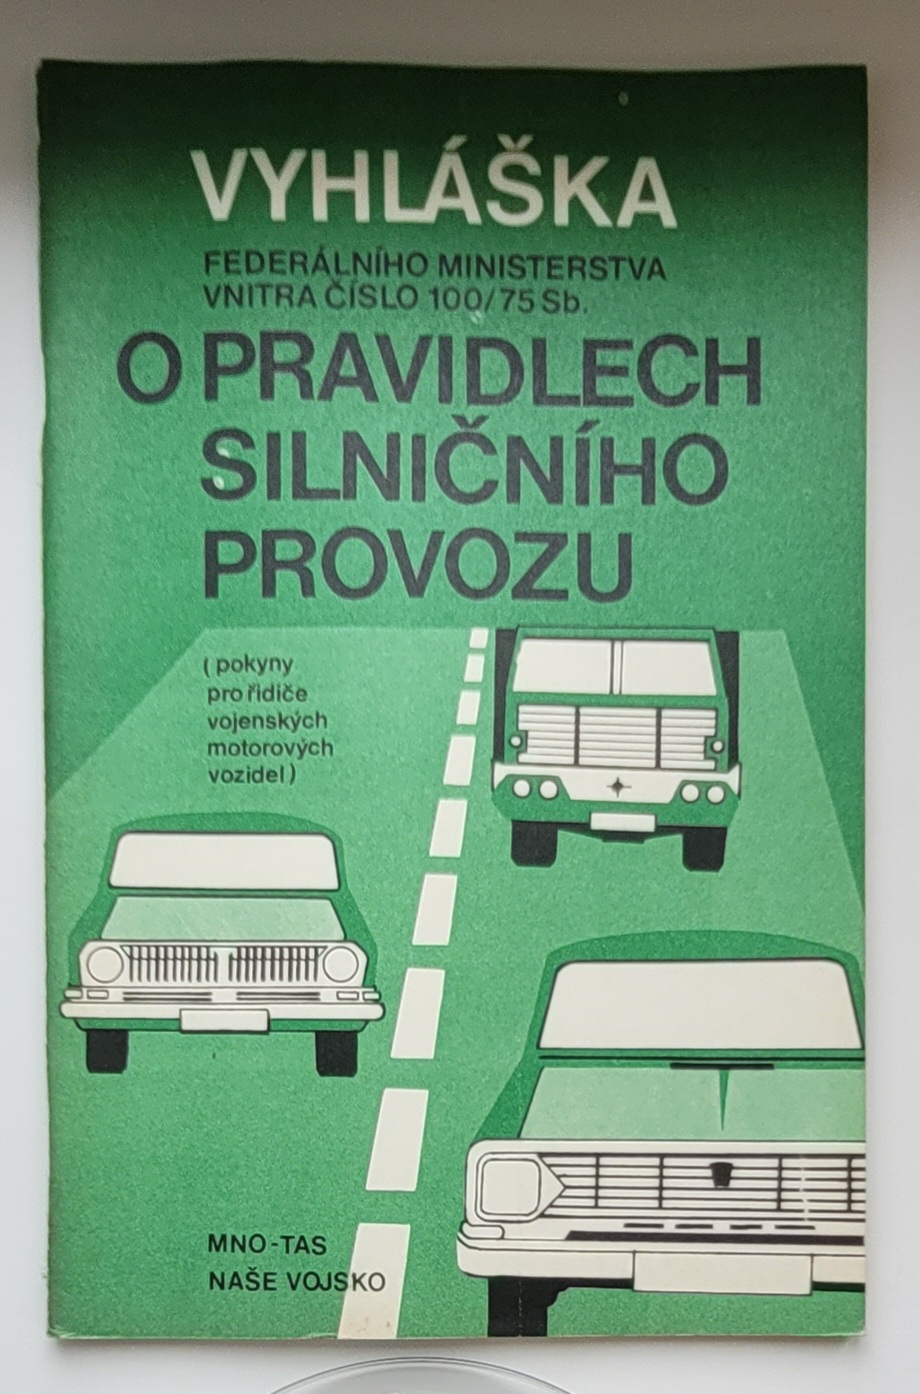 Vyhláška FMV č. 100/75 Sb. o pravidlech silničního provozu - ANTIKVARIÁT